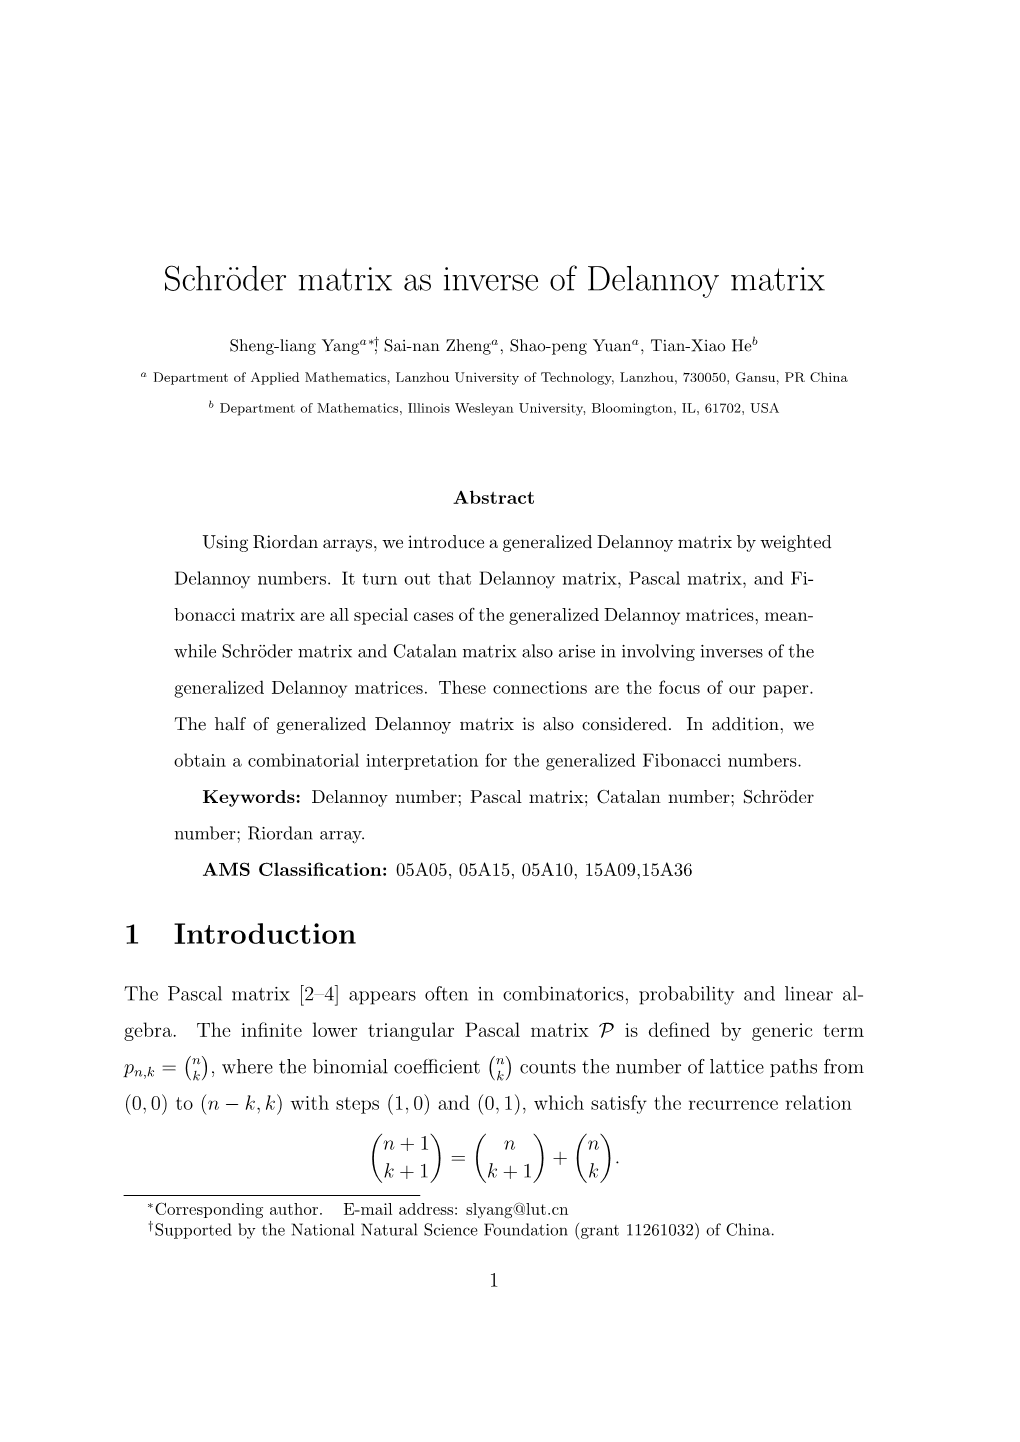 Schröder Matrix As Inverse of Delannoy Matrix